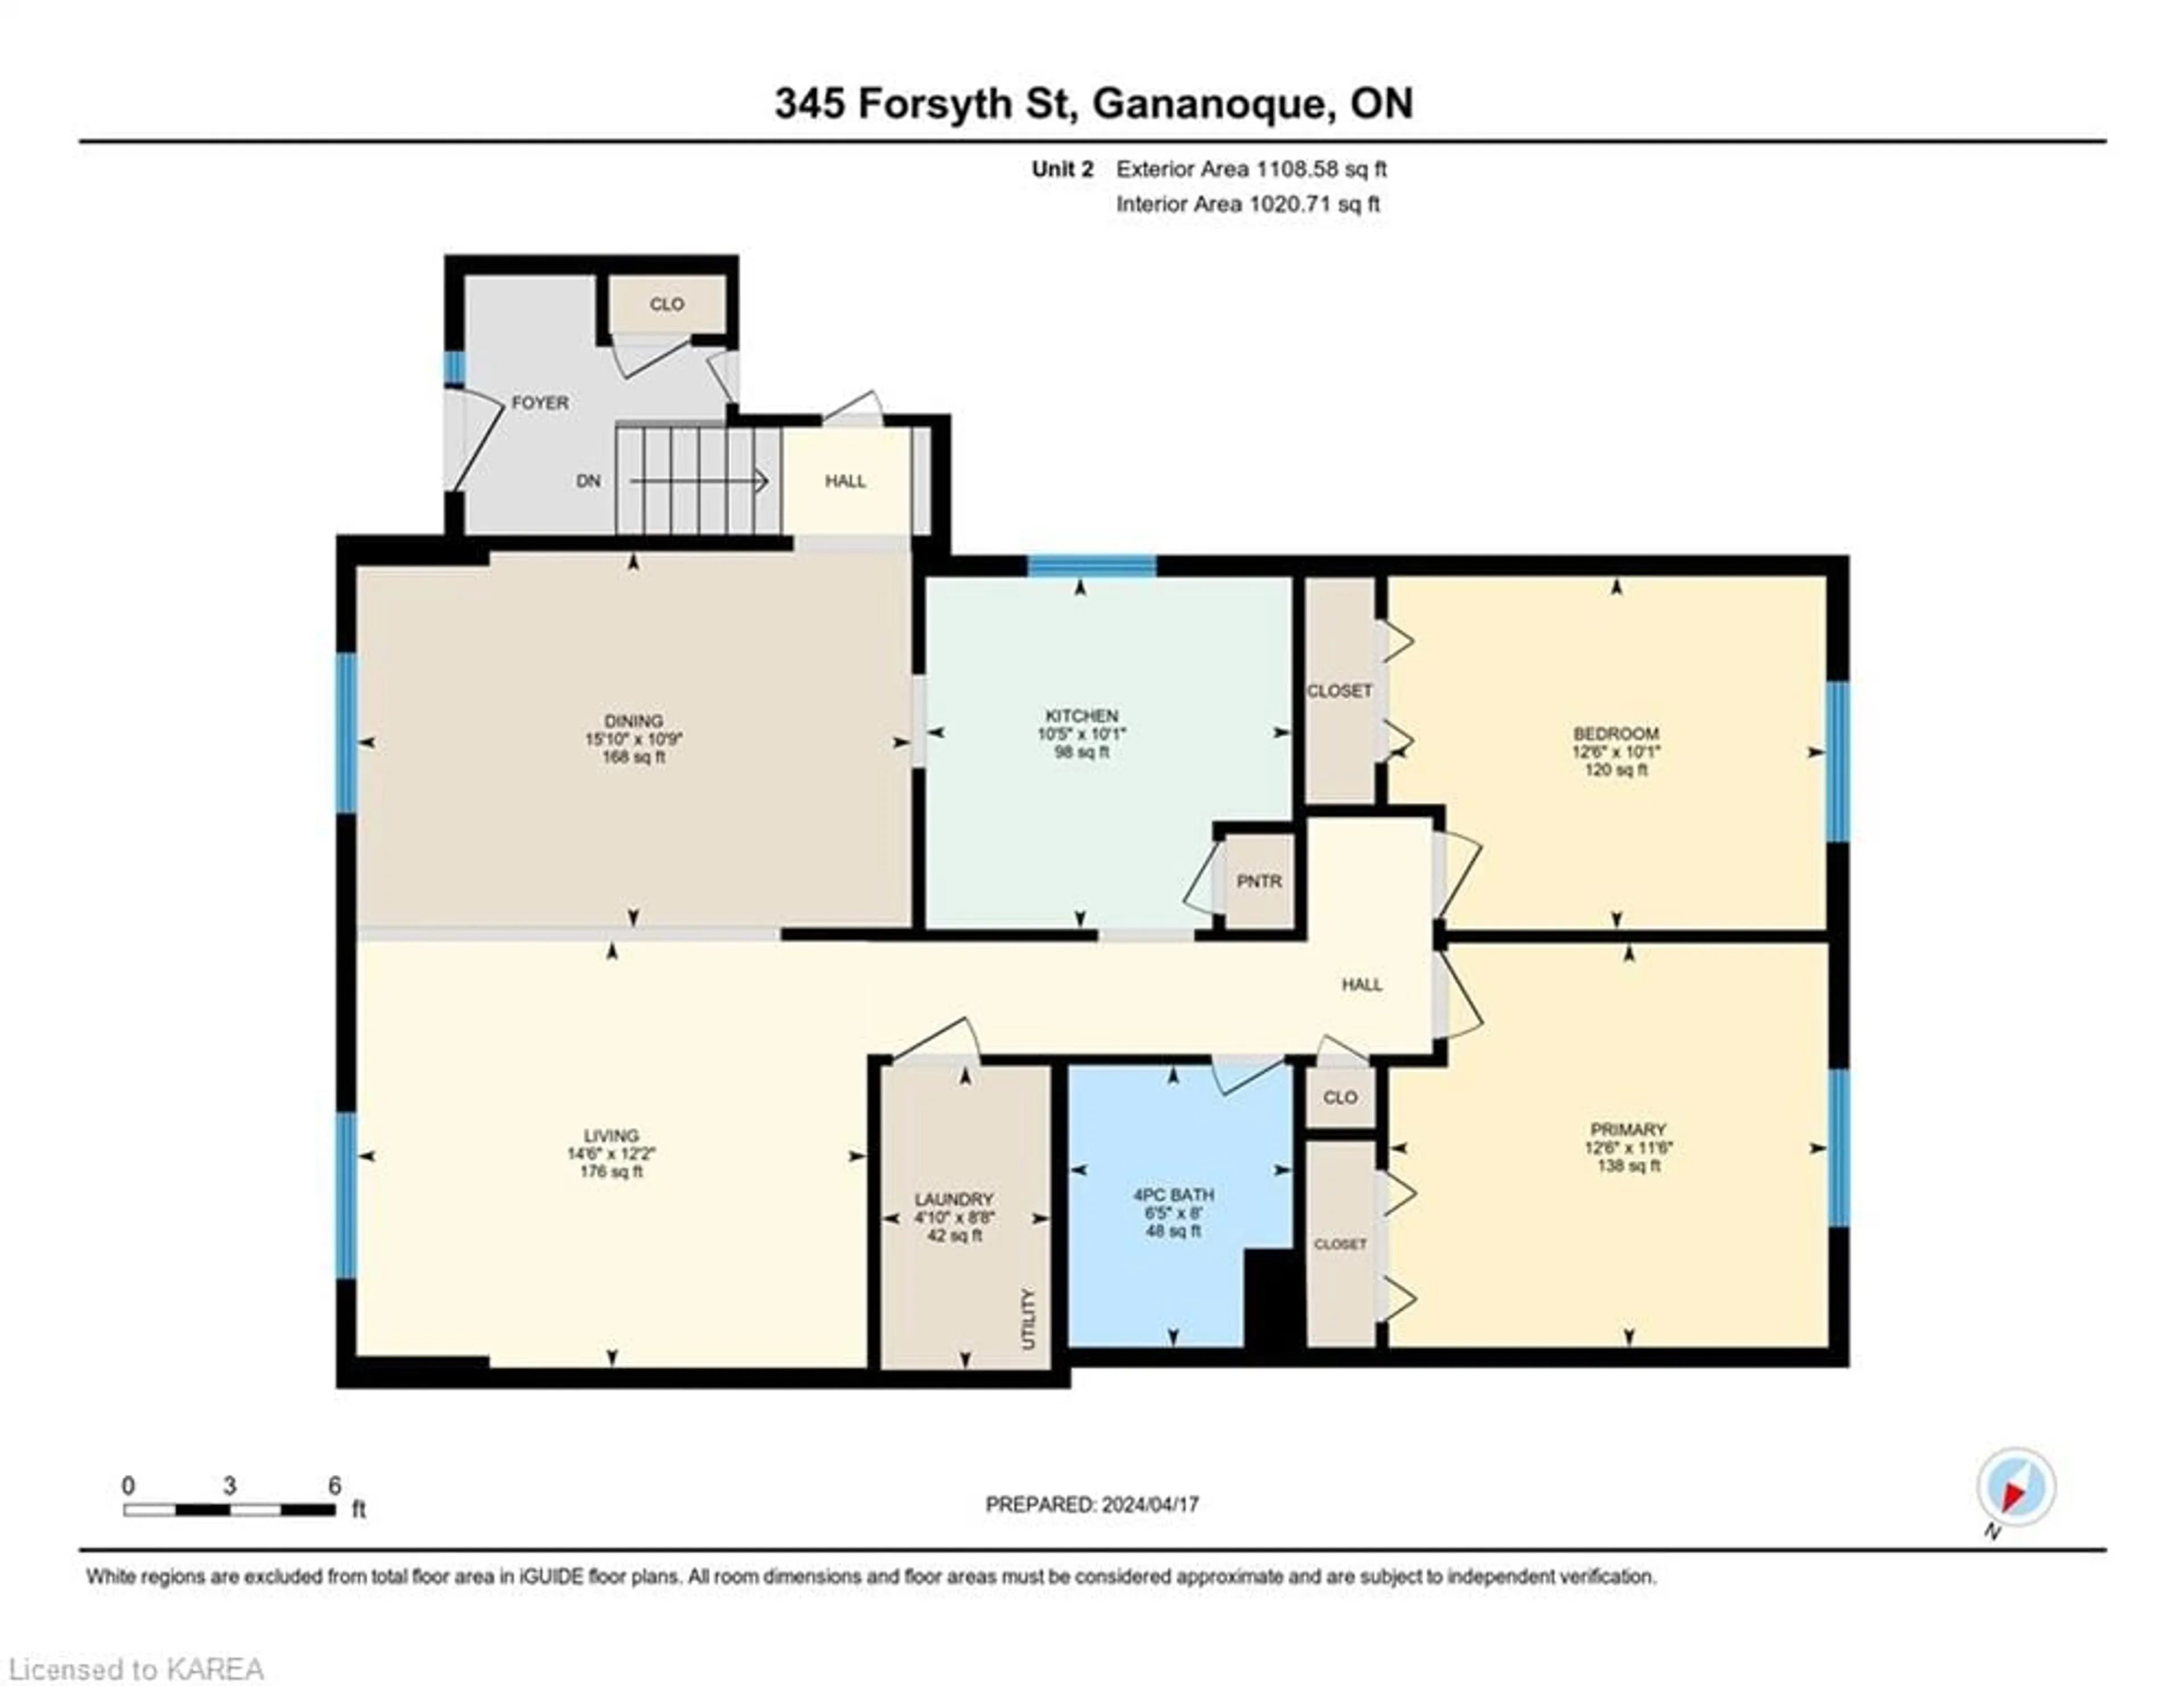 Floor plan for 343-345 Forsyth St, Gananoque Ontario K7G 3B4